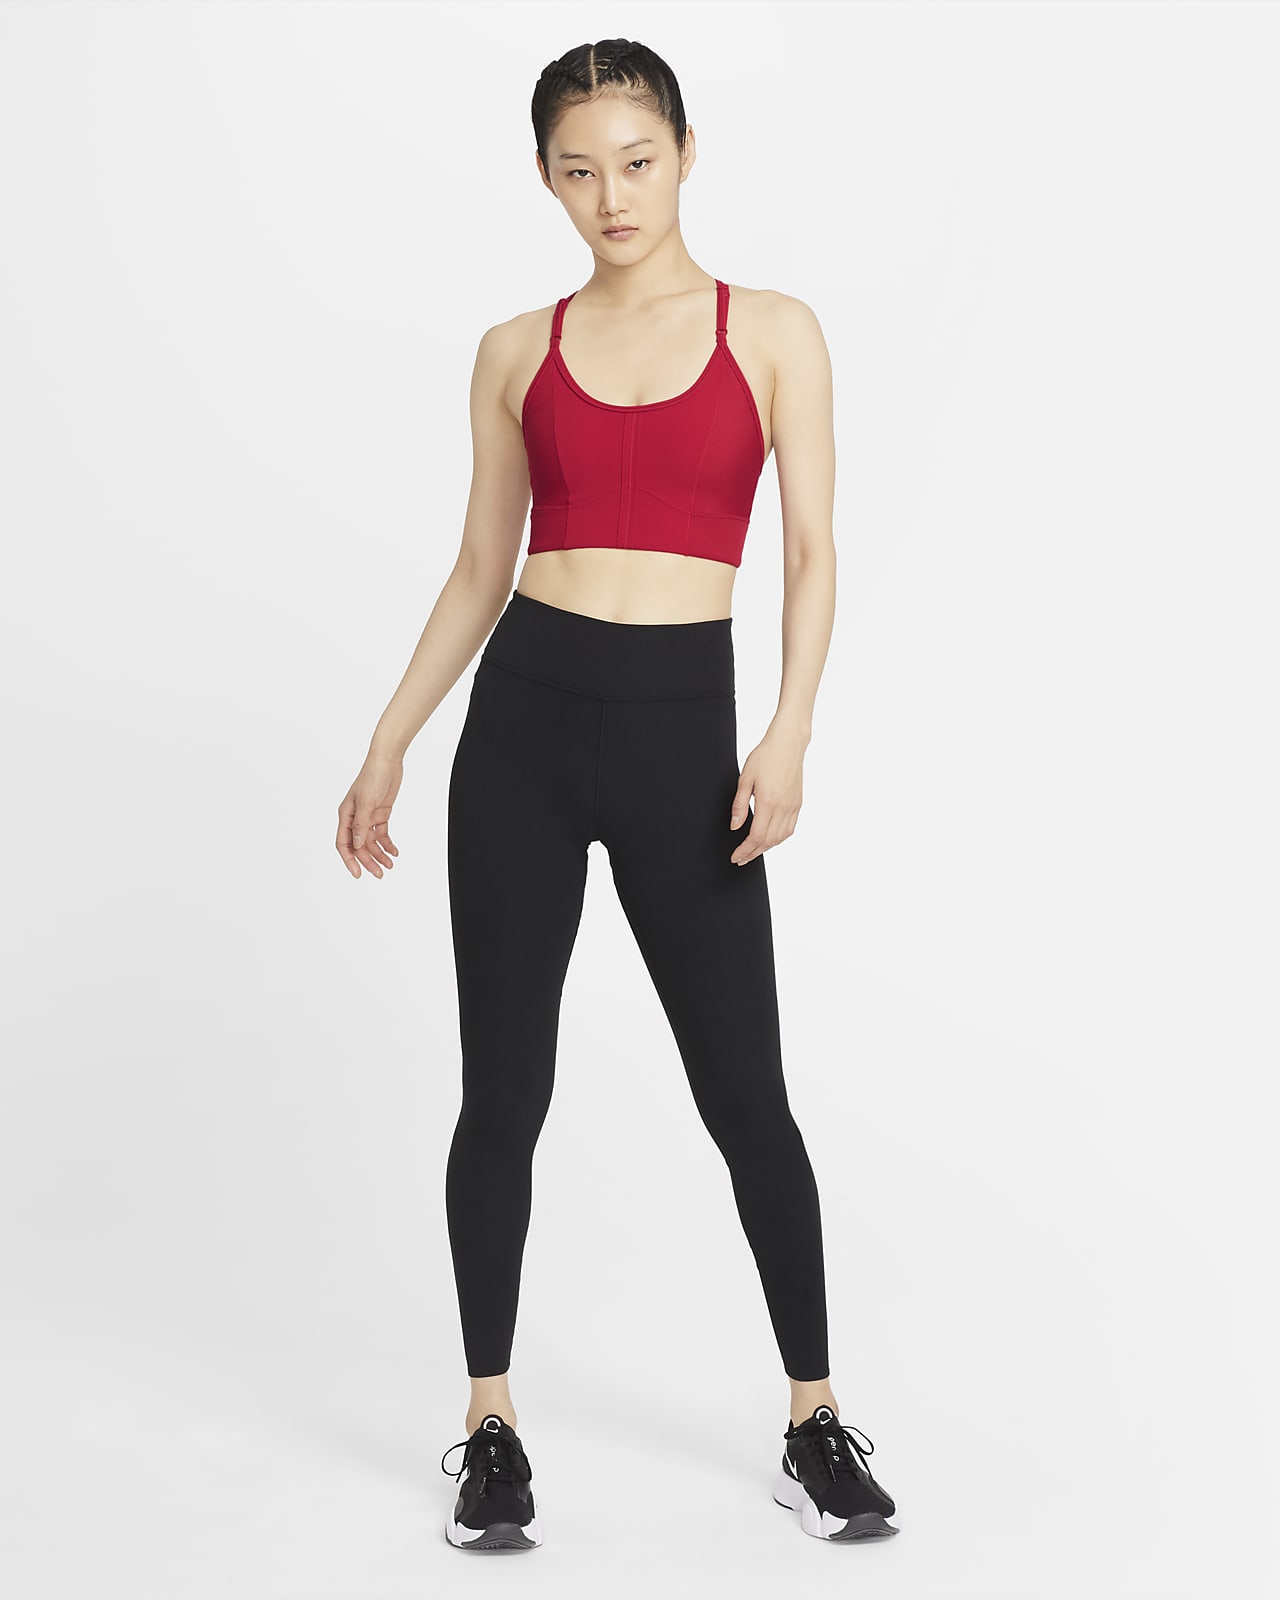 Sale Women Sports Bra Yoga Padded Fitness Blockout Vest Tops Underwear US Seller 